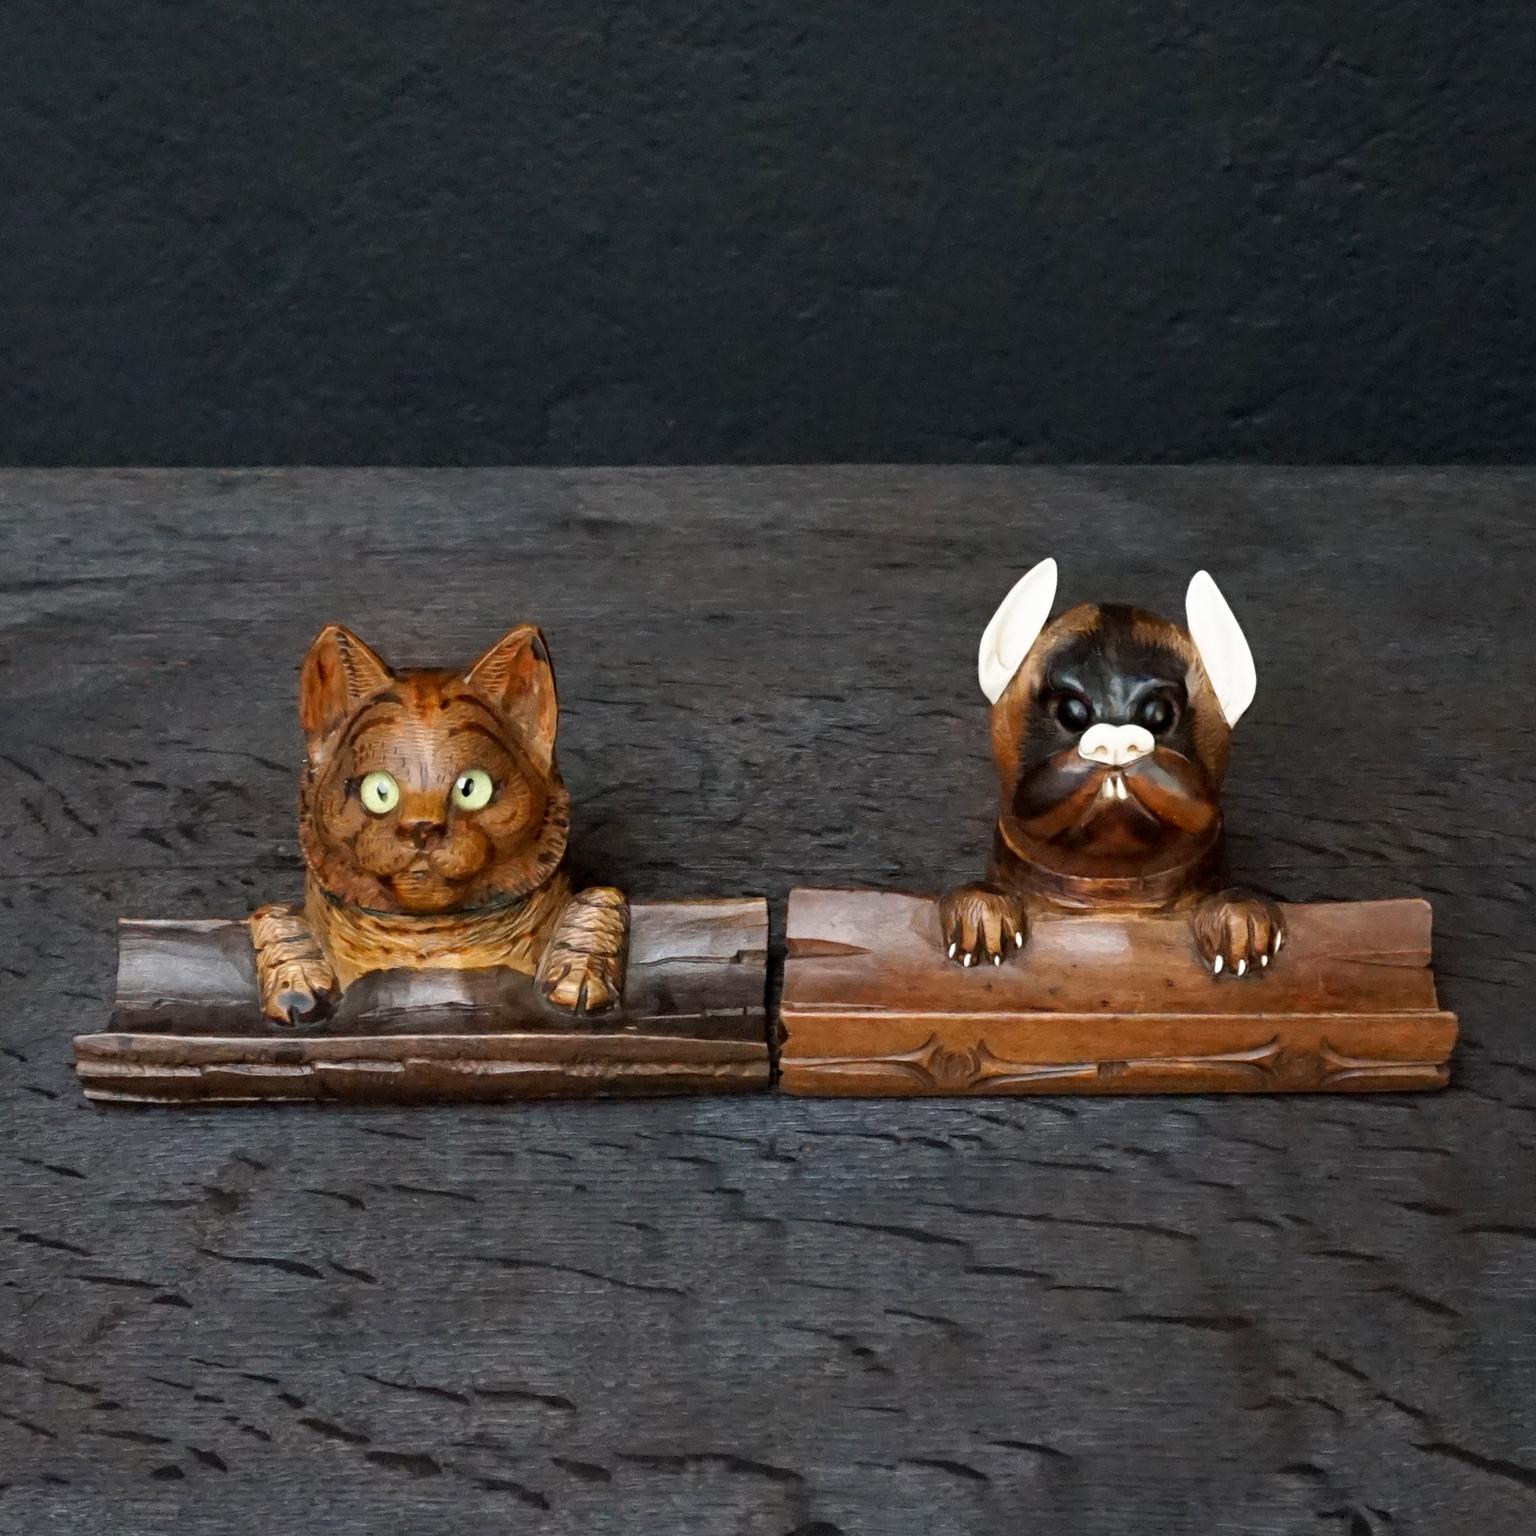 Sehr hübsches Set aus zwei geschnitzten Hunde- und Katzenköpfen aus Nussbaumholz aus dem 19. Jahrhundert mit Glasaugen und Tintenfass mit Federhalter aus Holz. 

Aufwändig geschnitzte Details an Haaren, Zähnen, Augen und Pfoten. 
Die Katze hat grüne